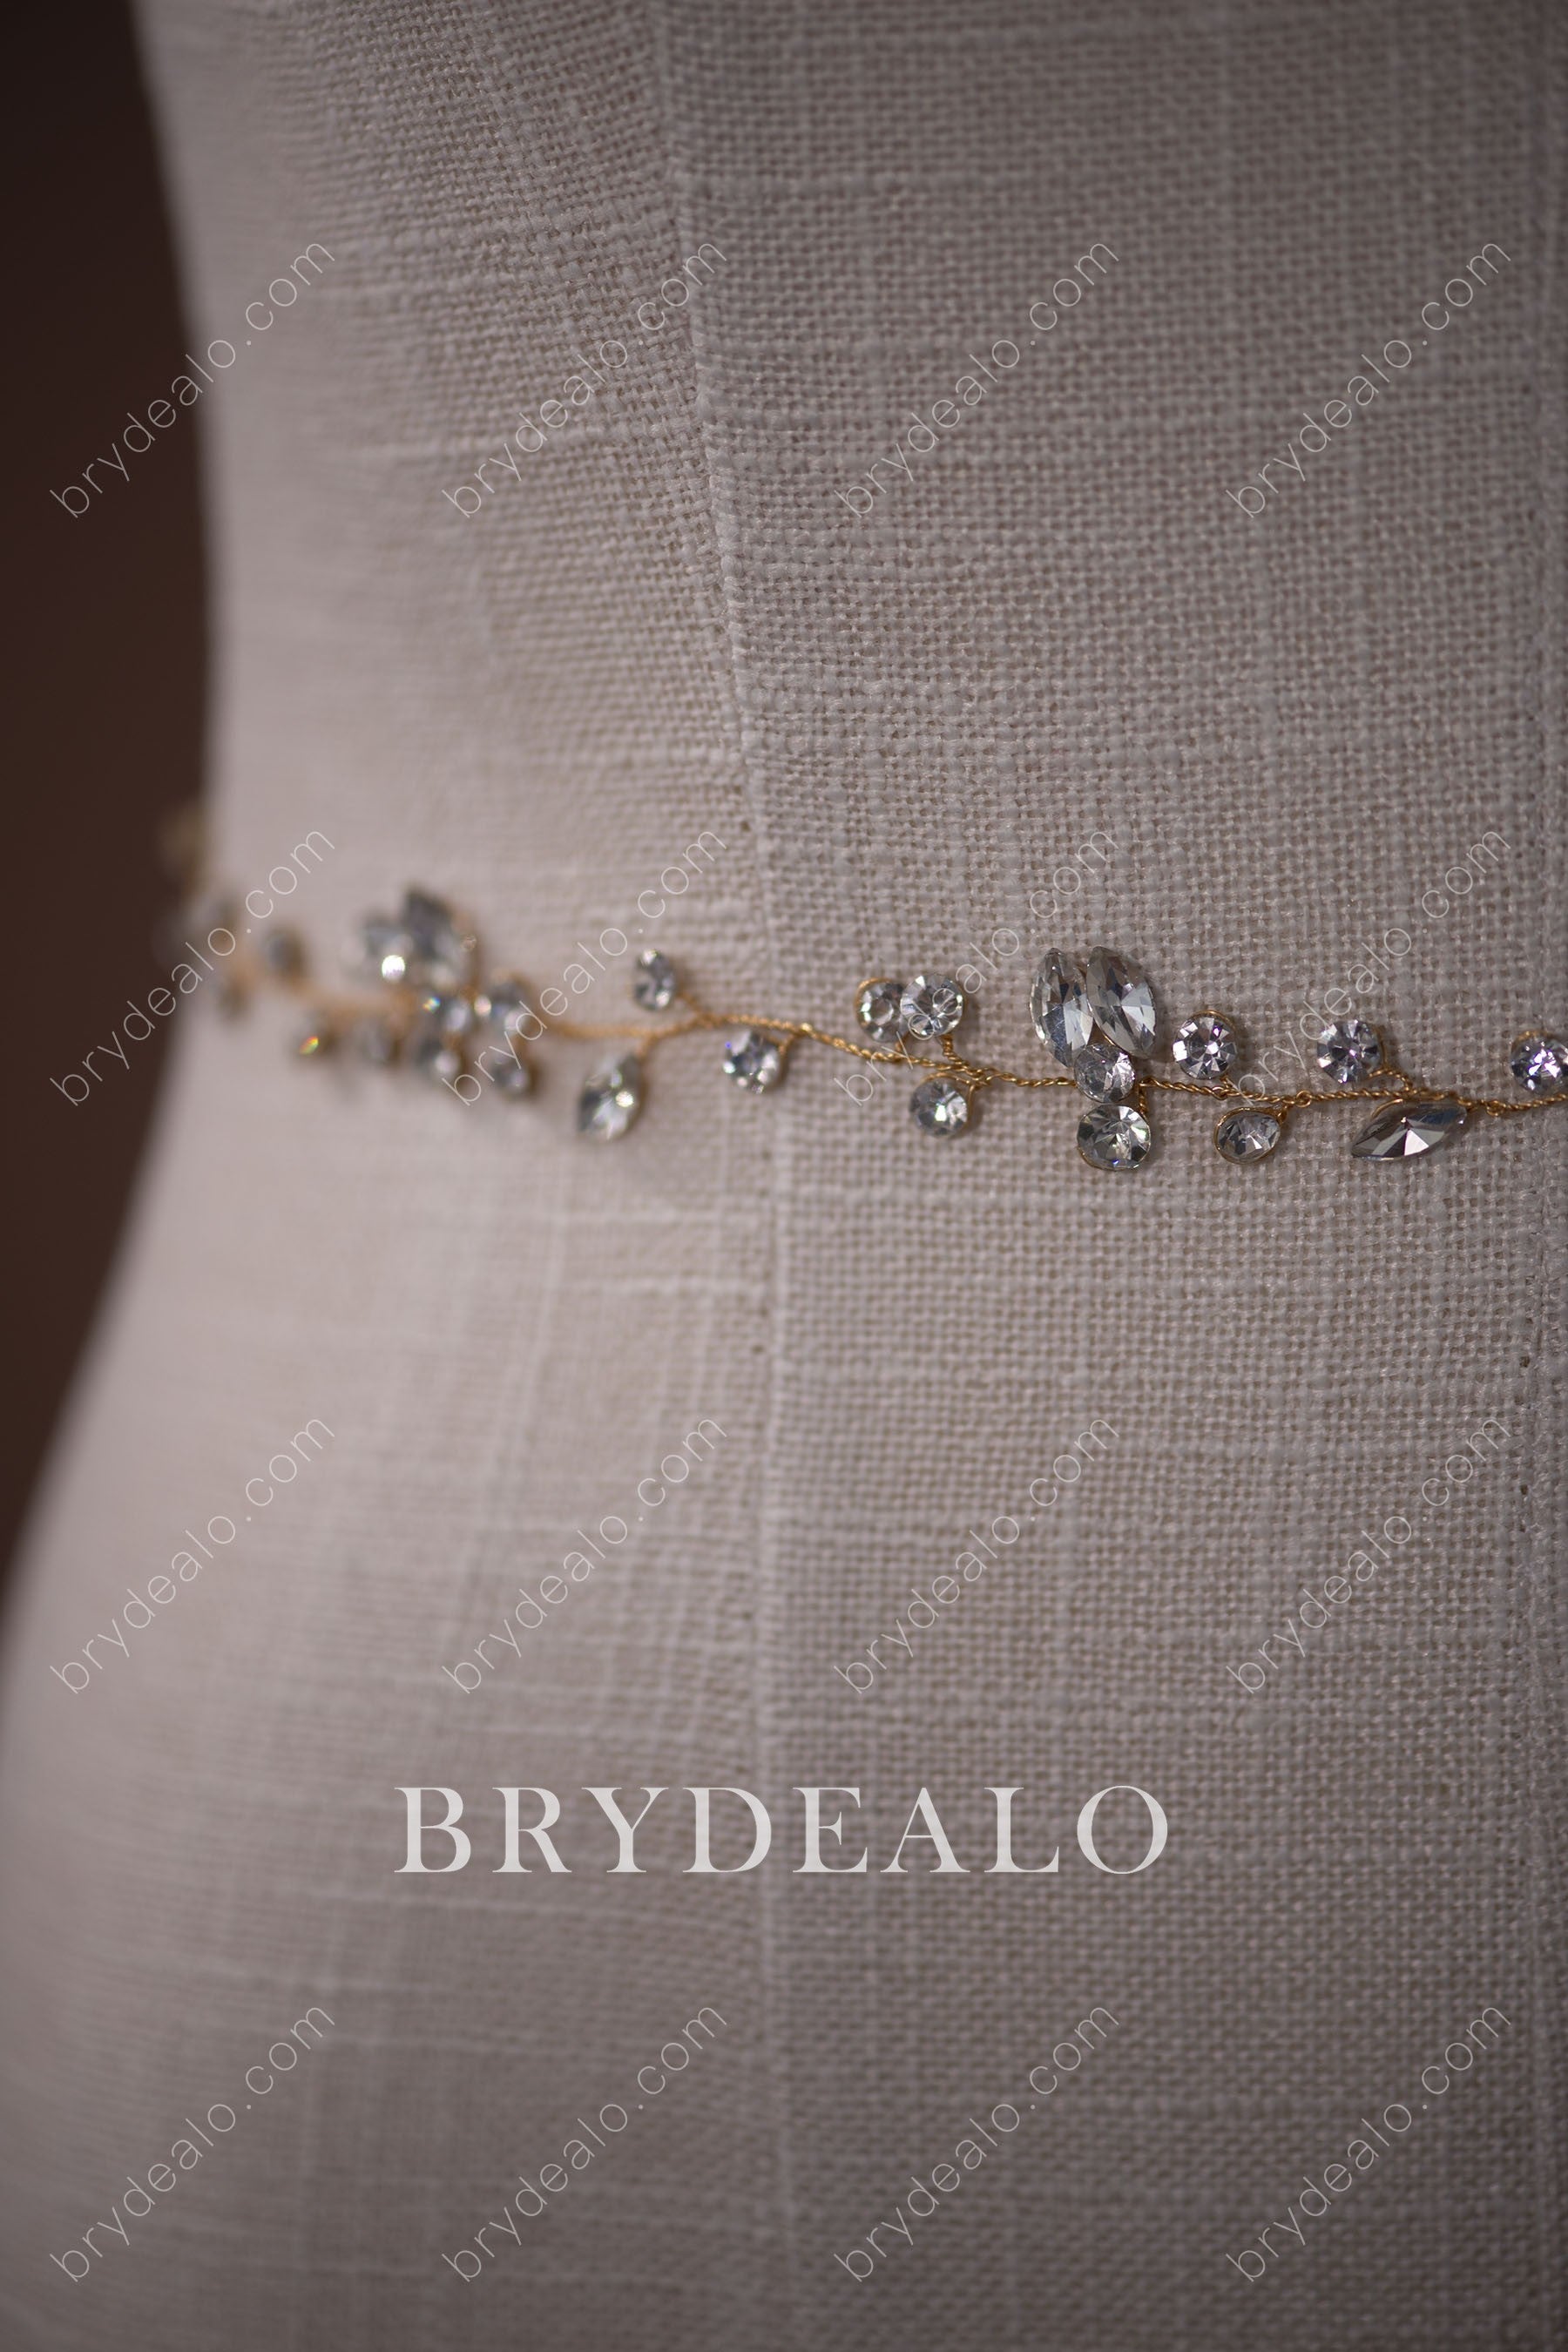 Best Exquisite Rhinestones Bridal Ribbon for Sale